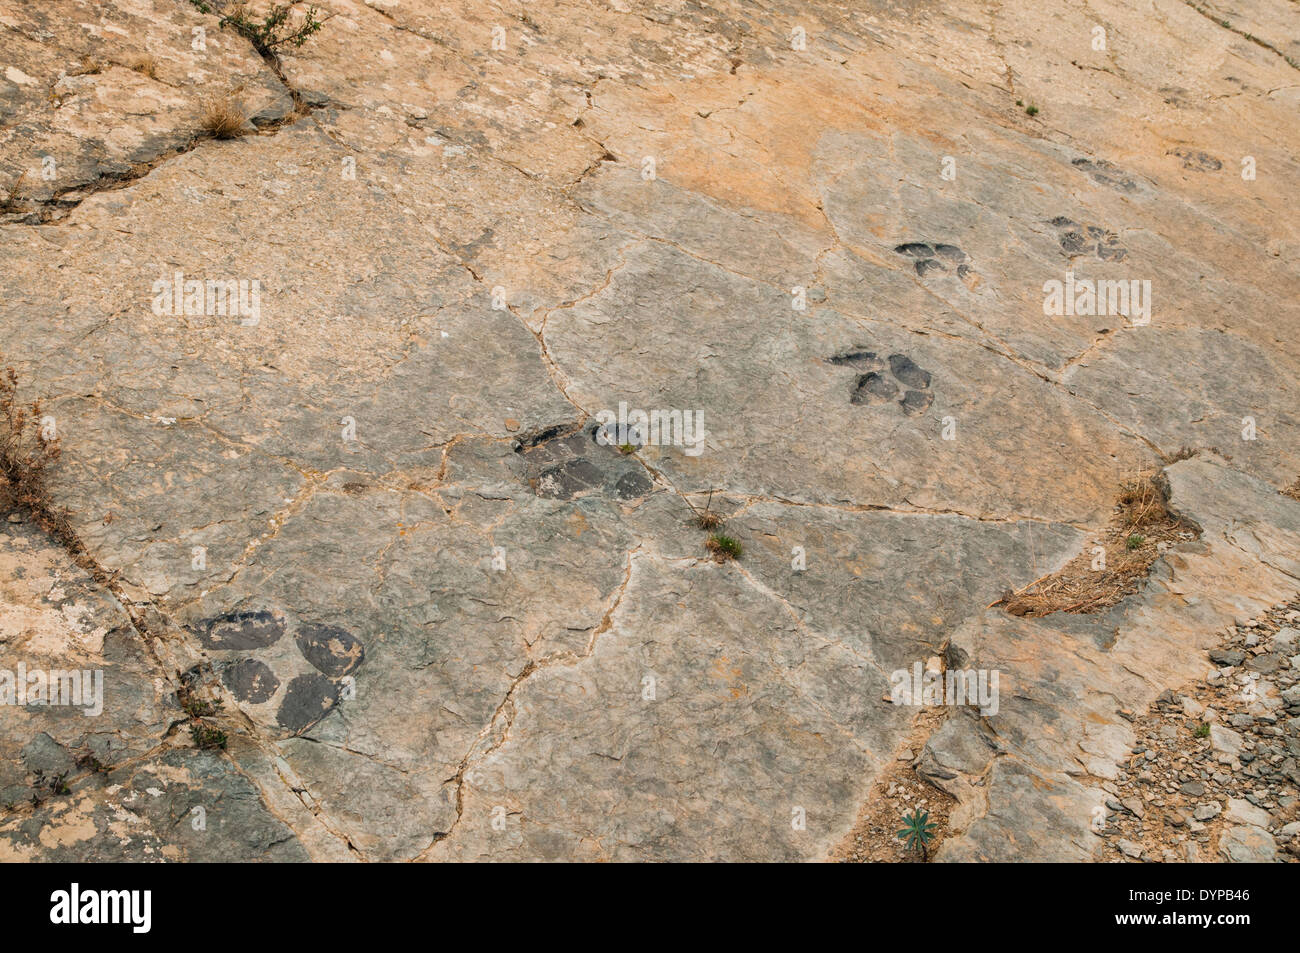 Tracce di impronte di dinosauro (o ichniti) in una roccia piatta, in precedenza il fondo di una laguna interna al sito fossile Munilla, la Rioja, Spagna. Foto Stock